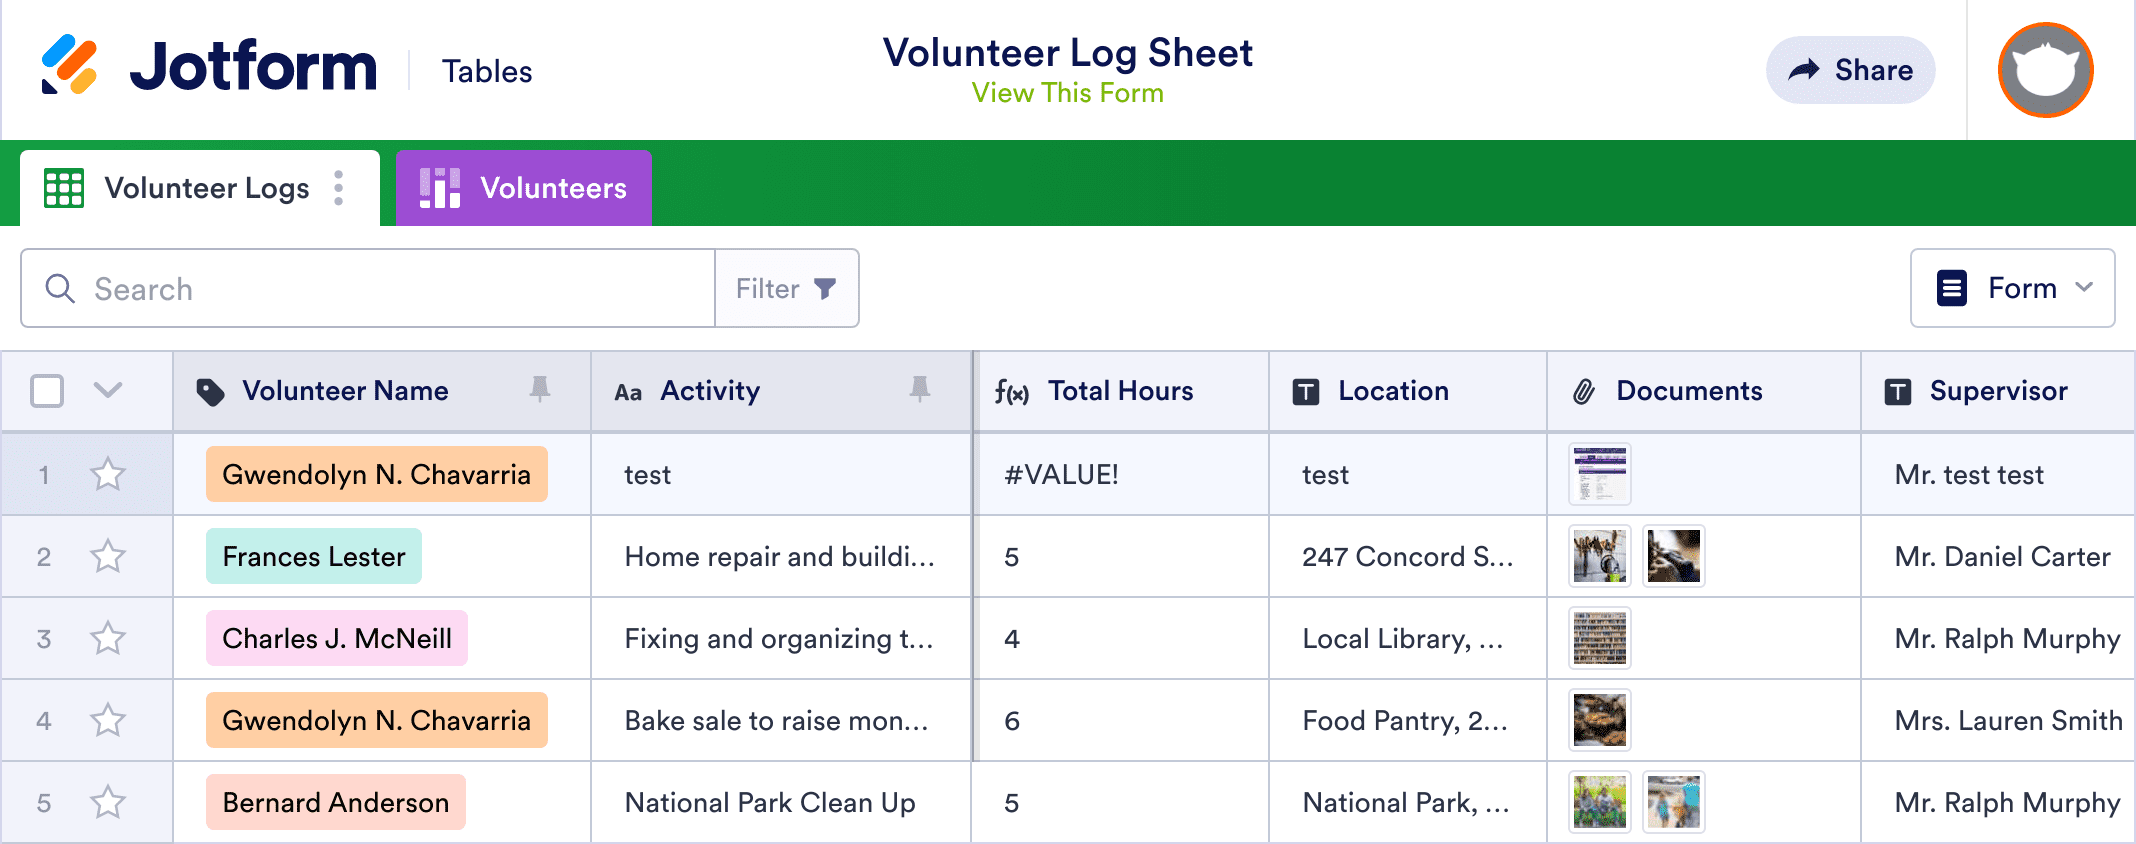 Volunteer Log Sheet